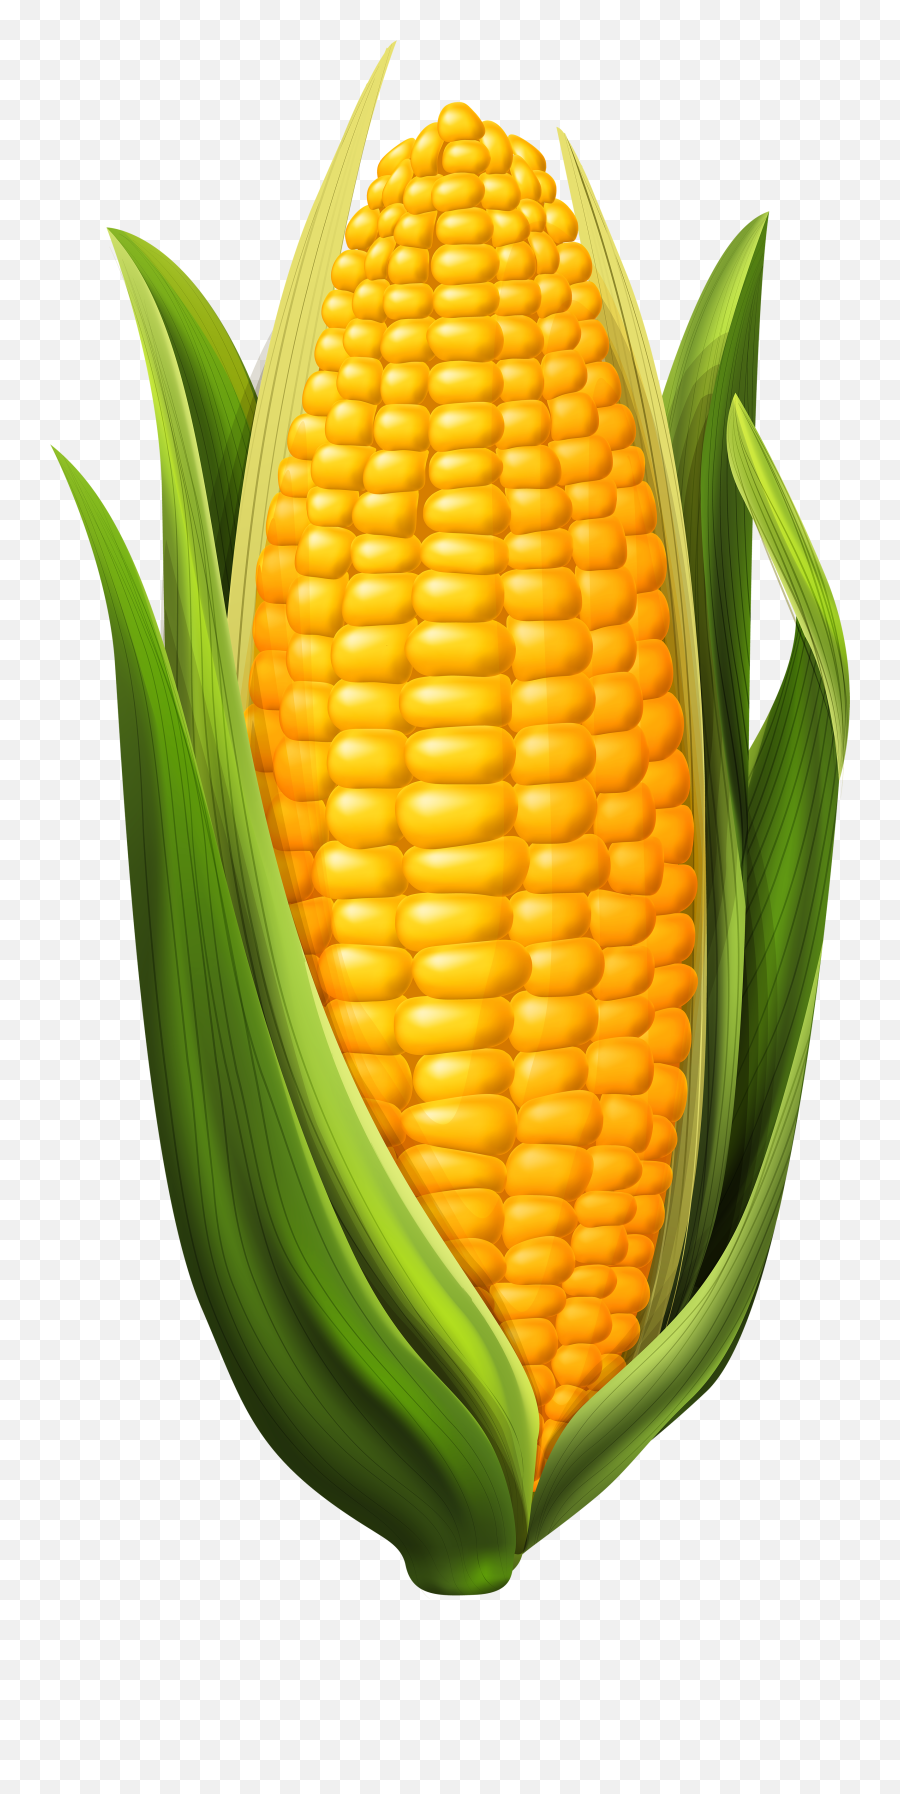 Download Corn Vector Png - Clipart Corn On The Cob,Corn Cob Png